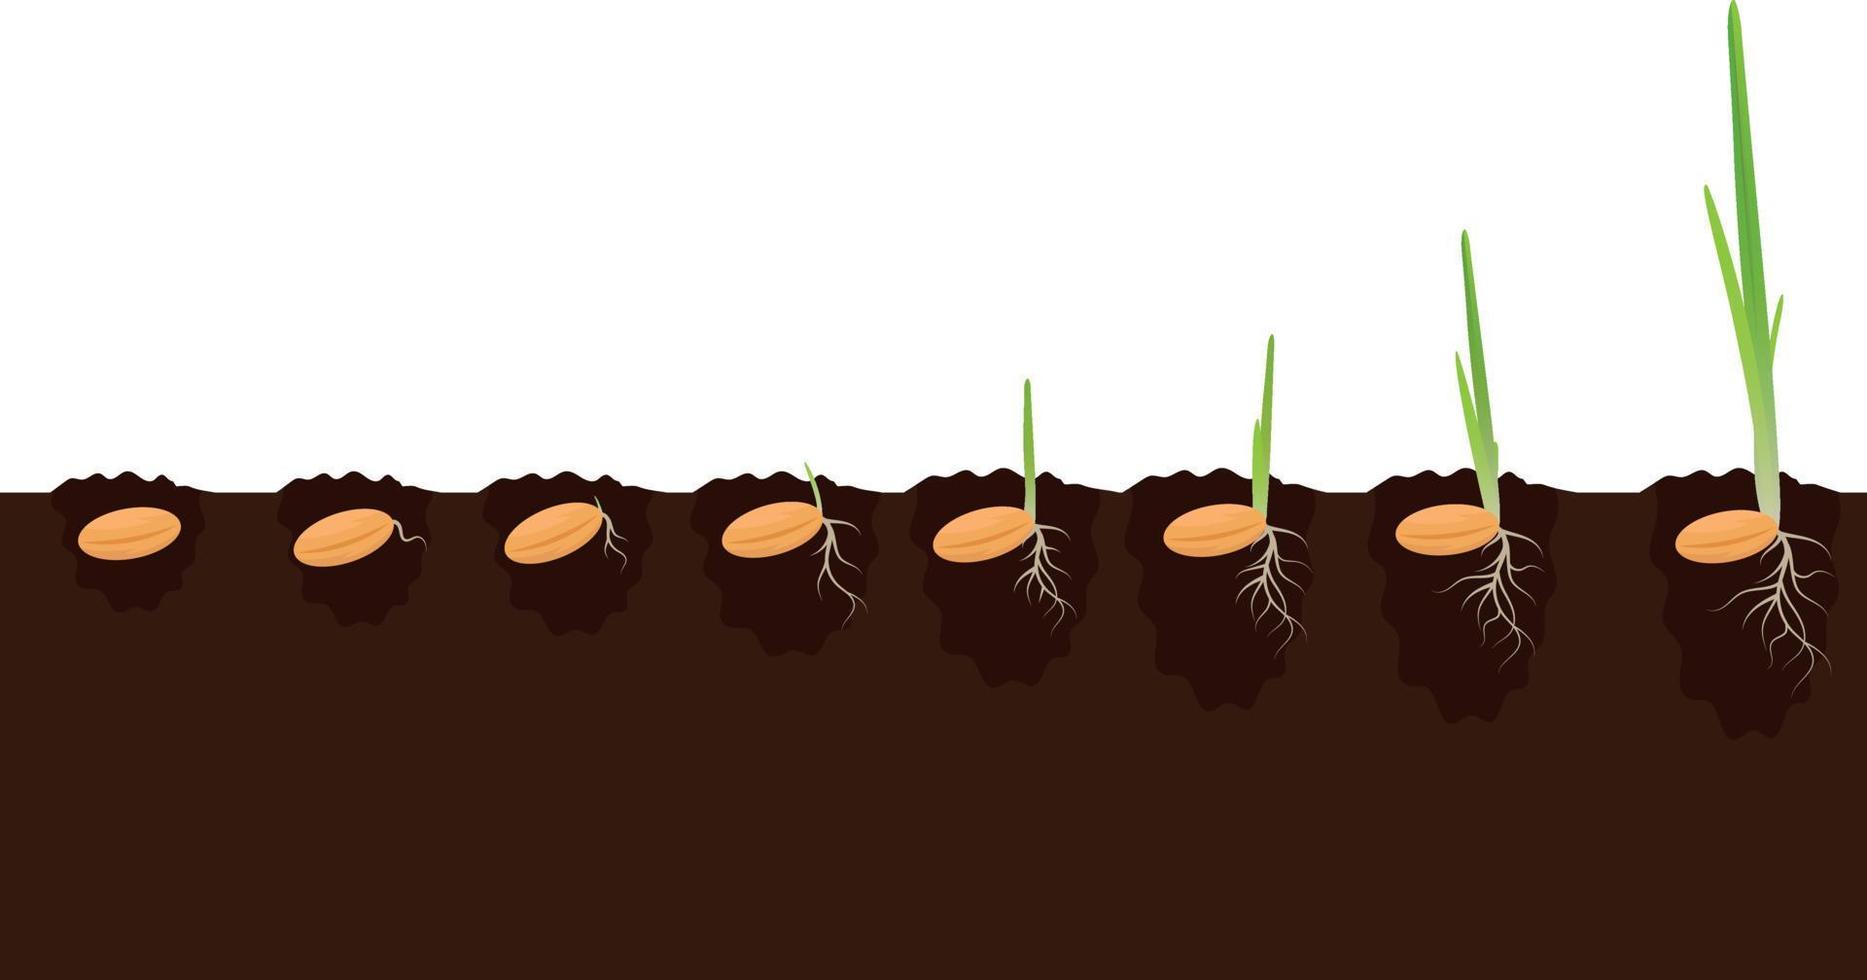 Etapas de las fases de crecimiento de las plantas en el suelo. concepto de progreso de germinación de evolución. germinar semillas de maíz, mijo, cebada, trigo, avena cultivando agricultura orgánica. ilustración aislada sobre fondo blanco vector